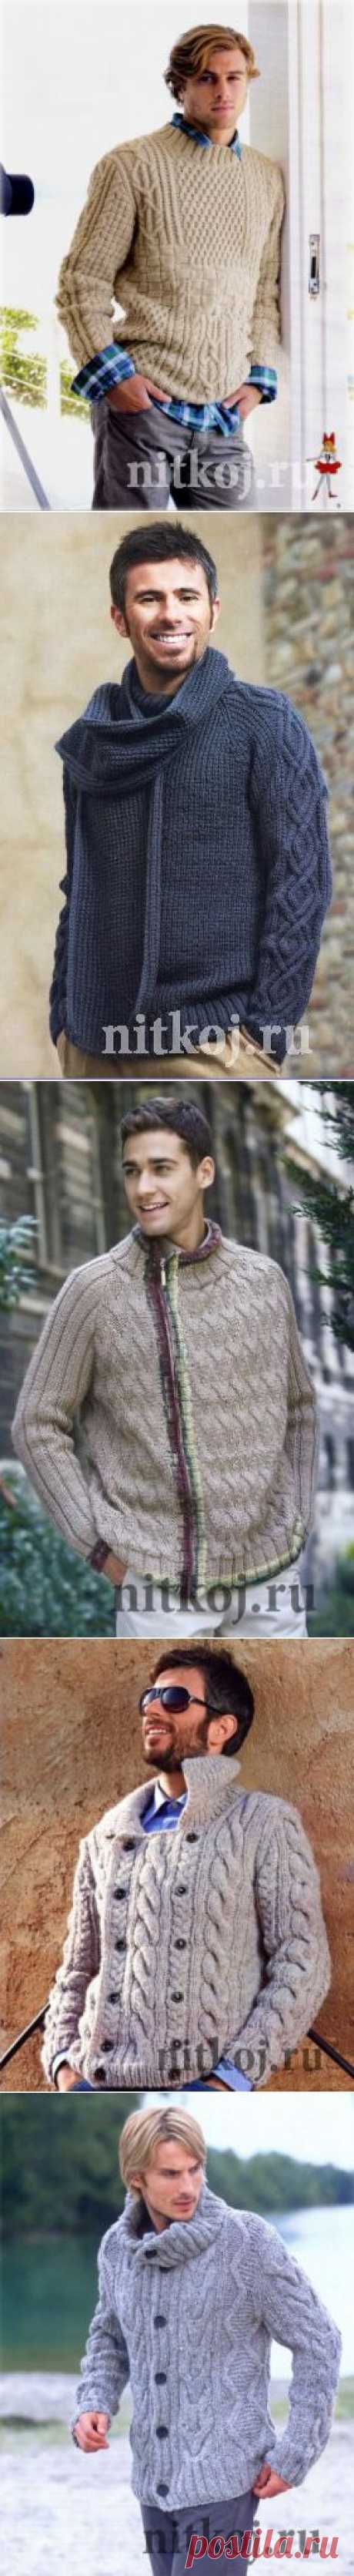 Свитера, пуловеры » Ниткой - вязаные вещи для вашего дома, вязание крючком, вязание спицами, схемы вязания